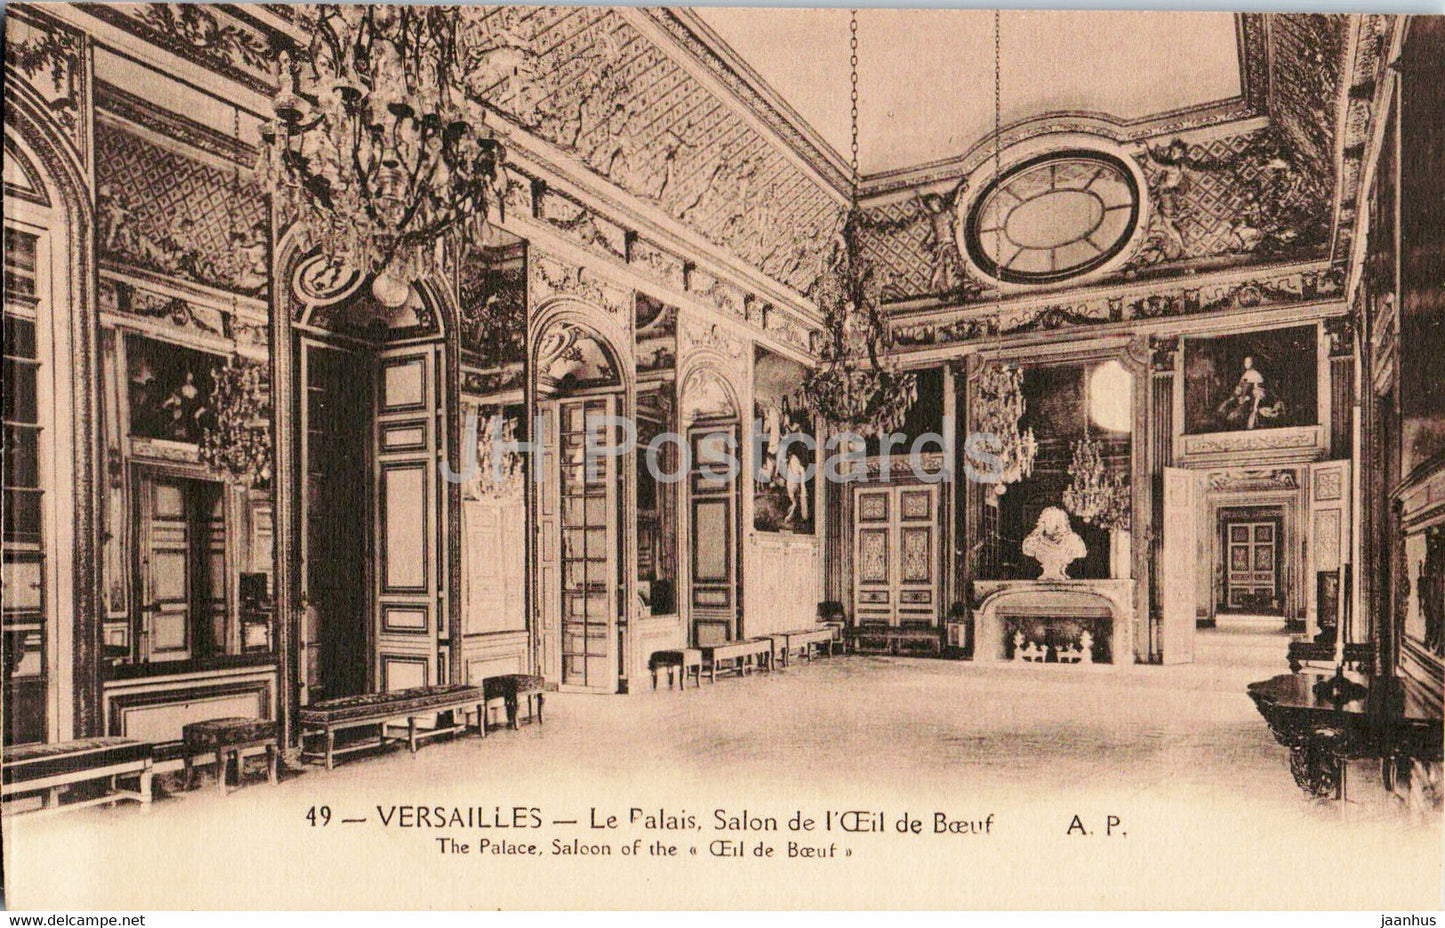 Versailles - Le Palais - Salon de l'Ceil de Boeuf - 49 - old postcard - France - unused - JH Postcards